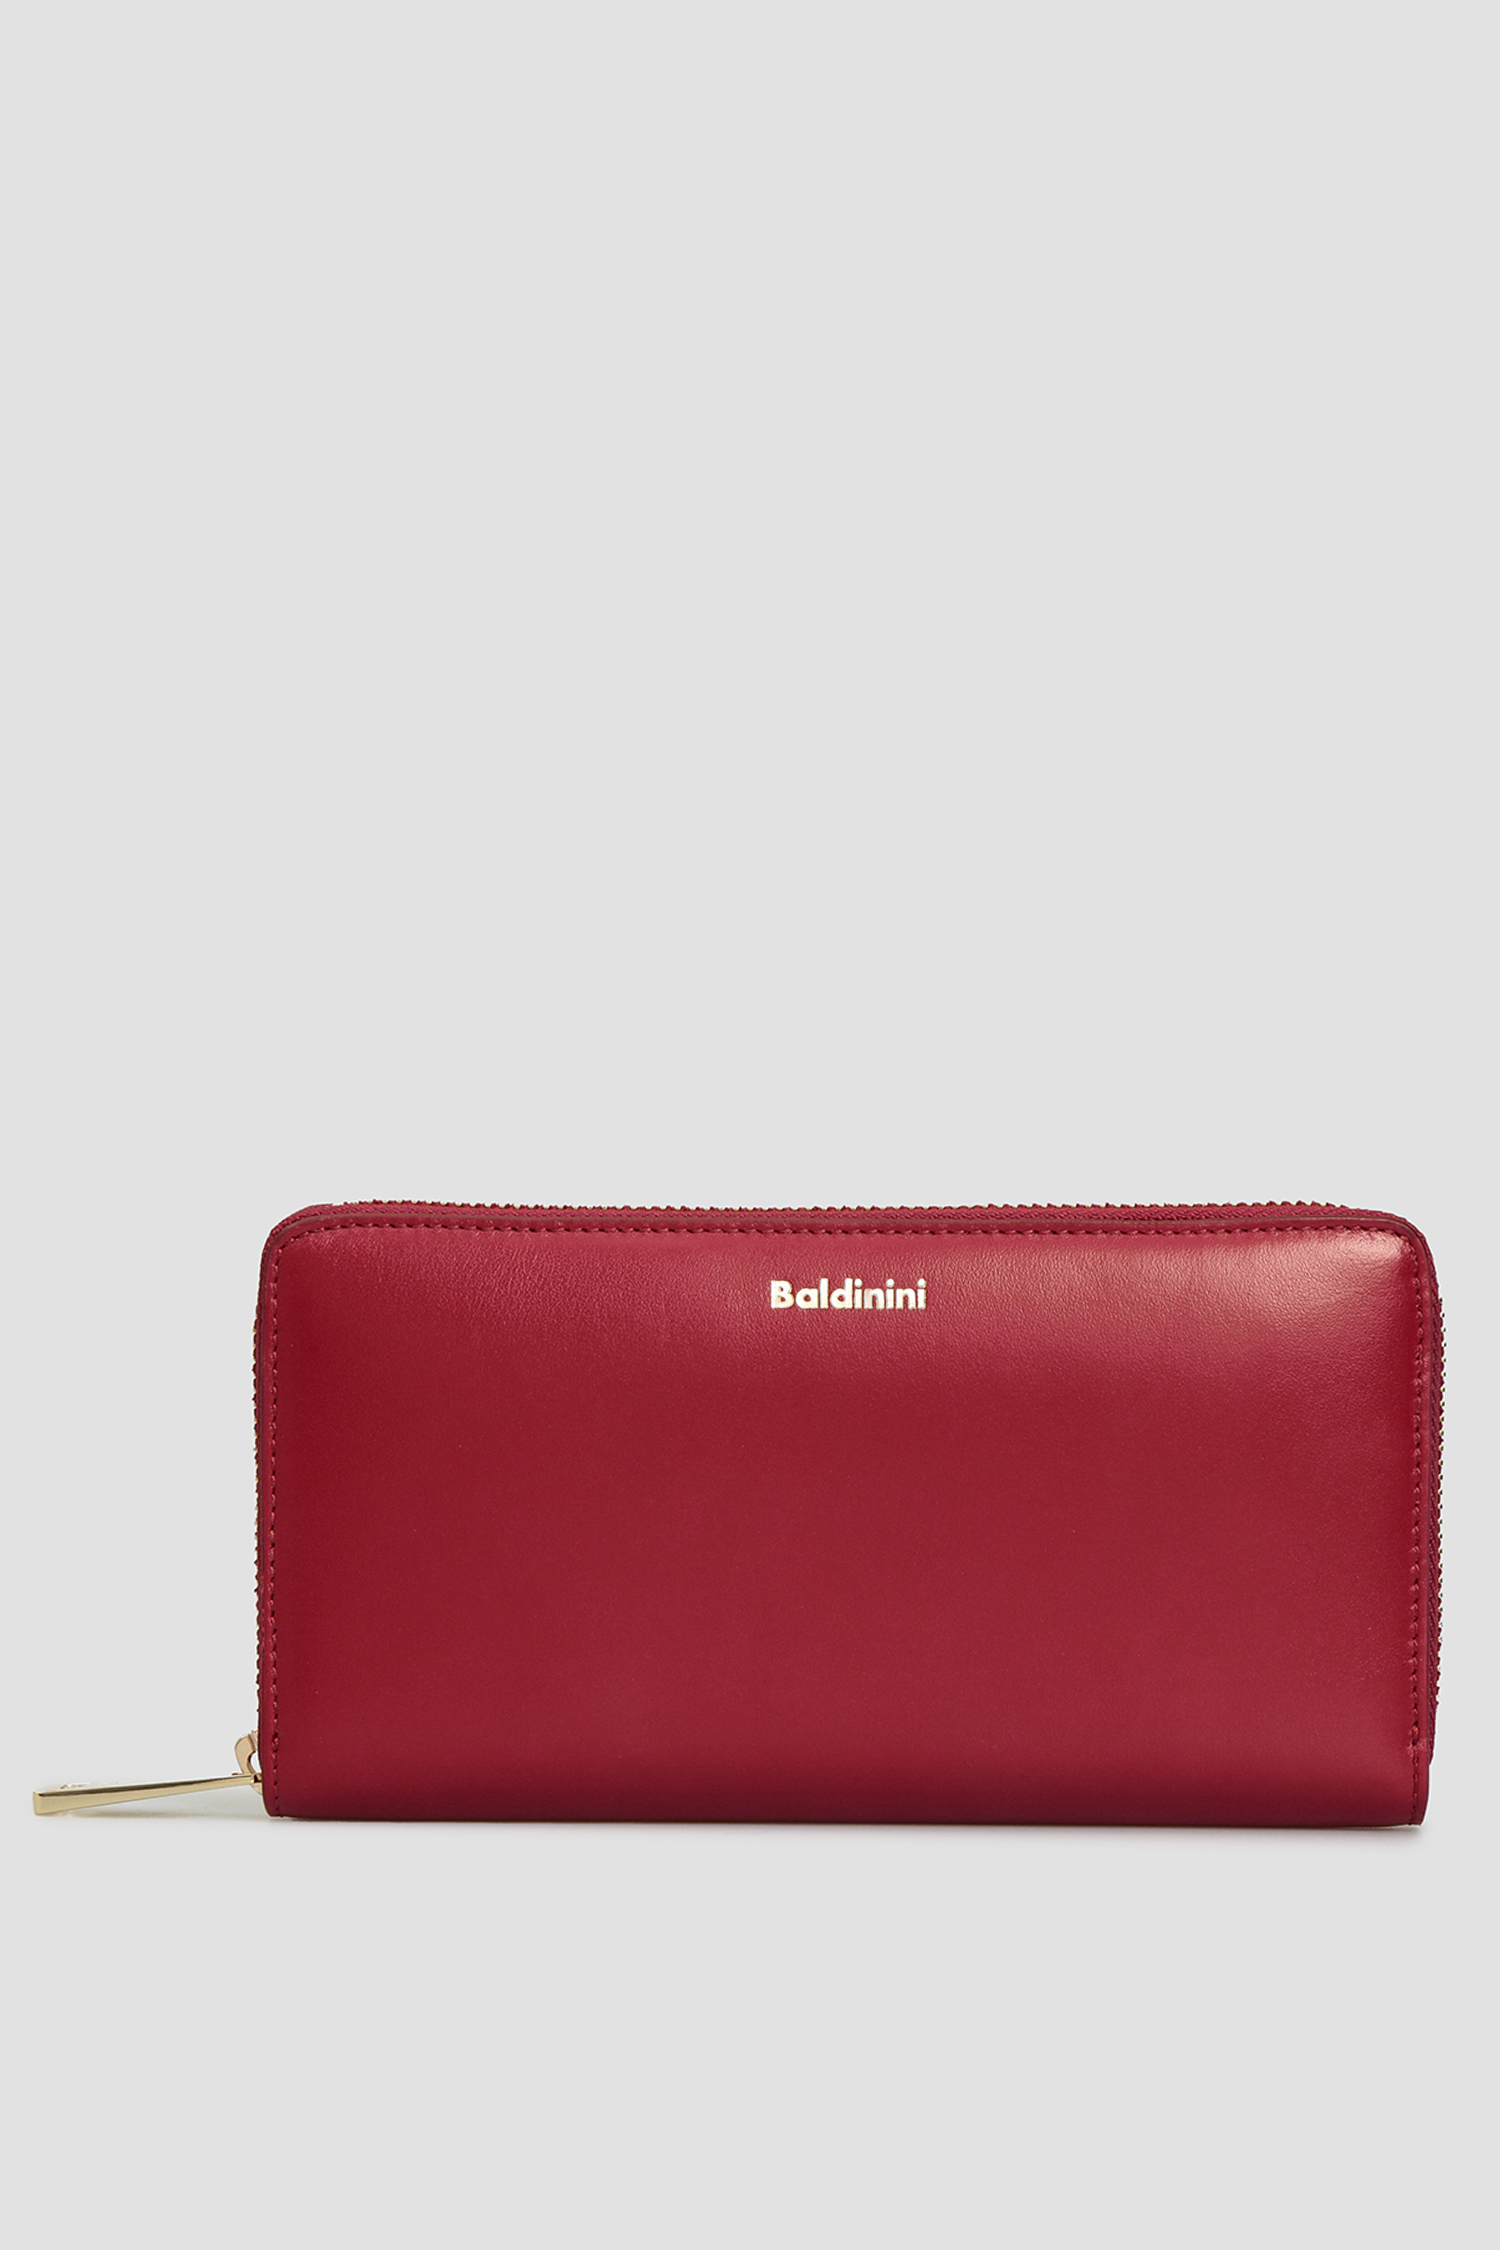 Бордовий шкіряний гаманець для дівчат Baldinini P2B002FIRE;7040